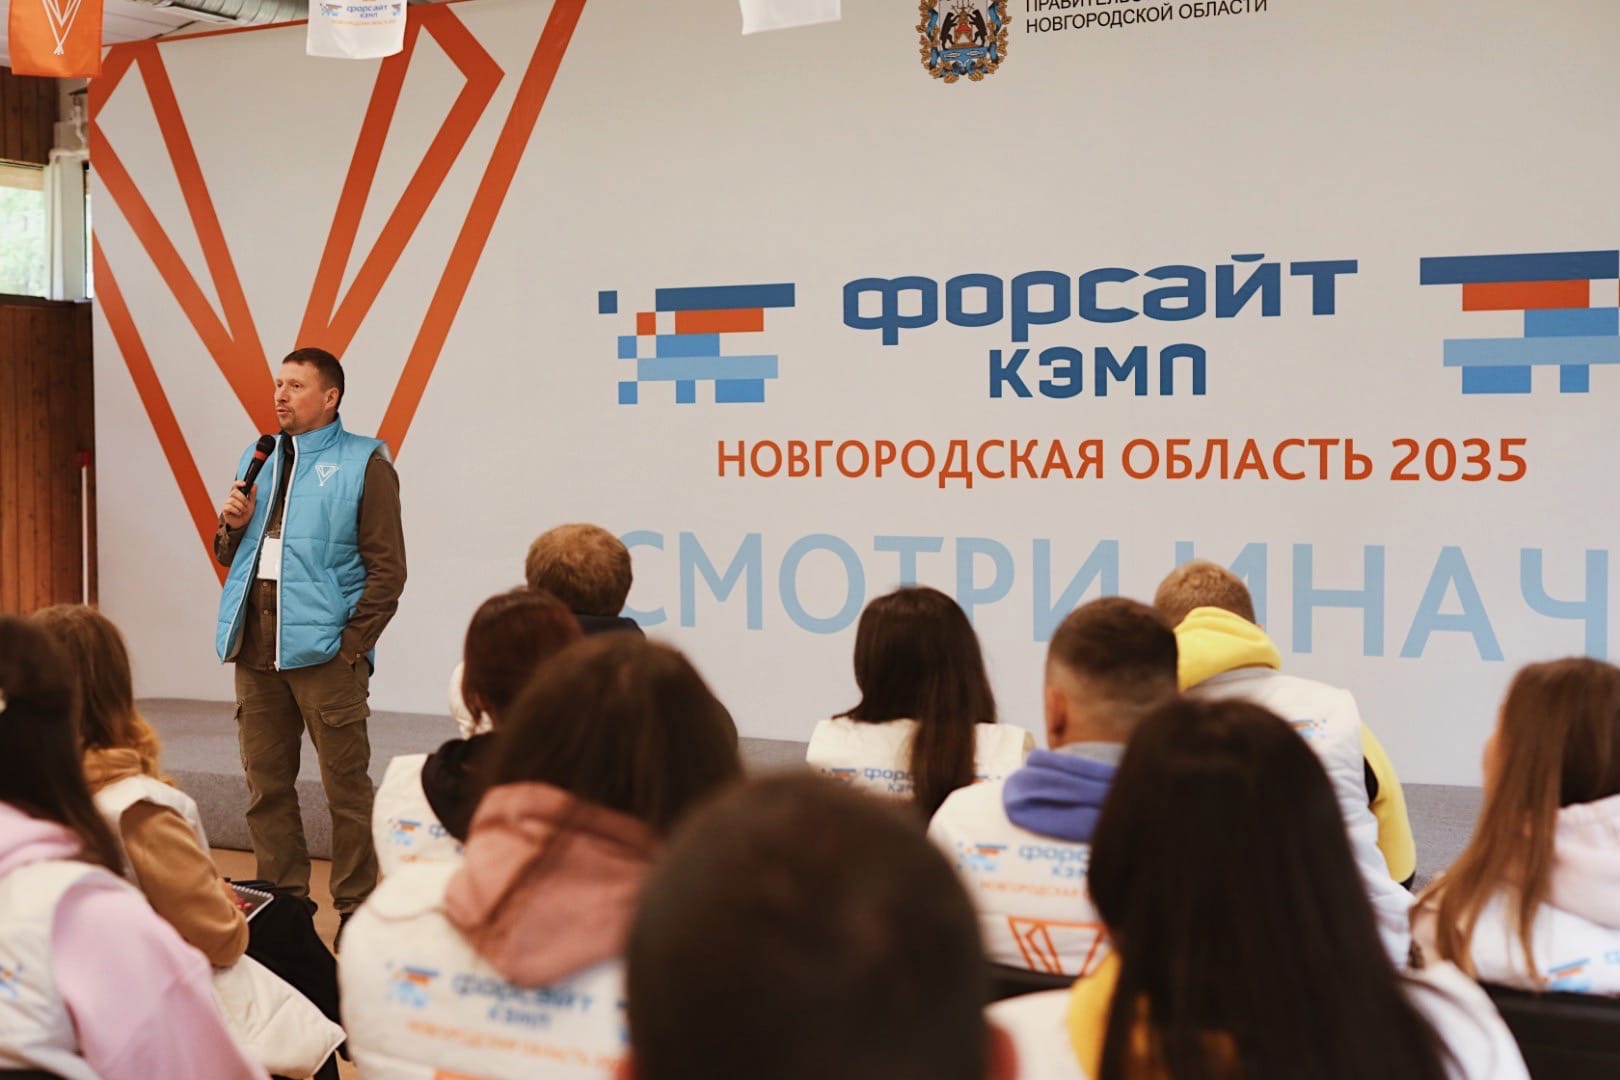 IV региональный форум в формате форсайт-кэмп «Новгородская область 2035»